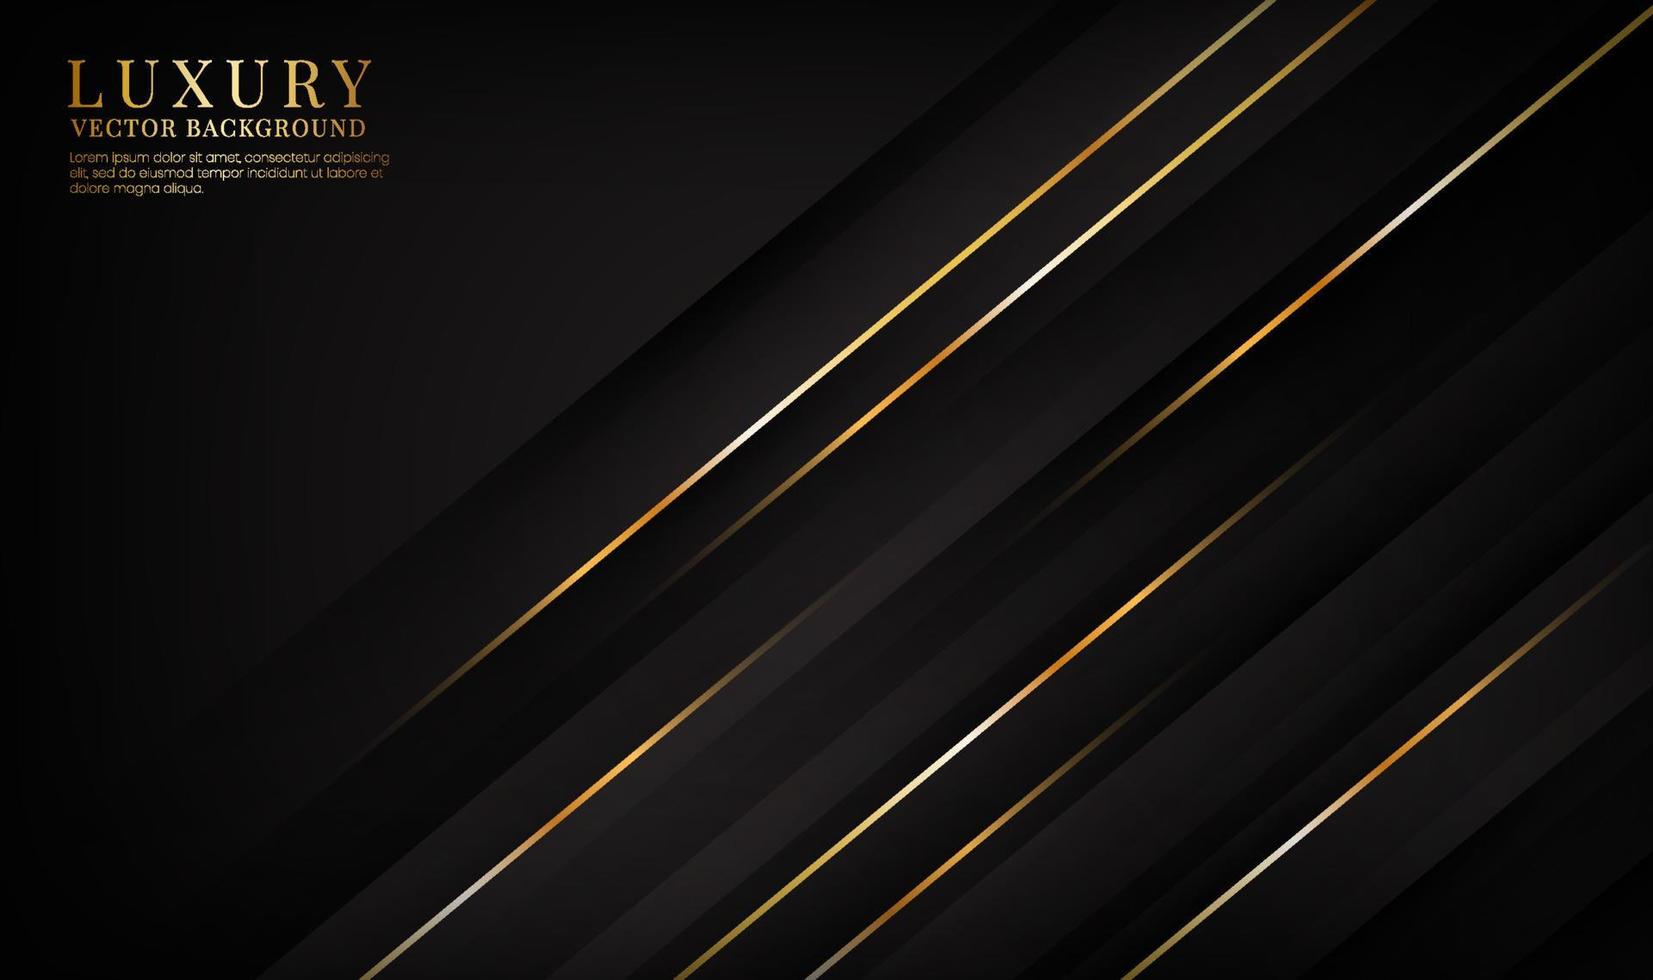 3D-Schwarz-Luxus-abstrakte Hintergrundüberlappungsschichten auf dunklem Raum mit goldenen Linien-Effekt-Dekoration. Grafikdesign-Element elegantes Stilkonzept für Banner, Flyer, Karten, Broschüren oder Zielseiten vektor